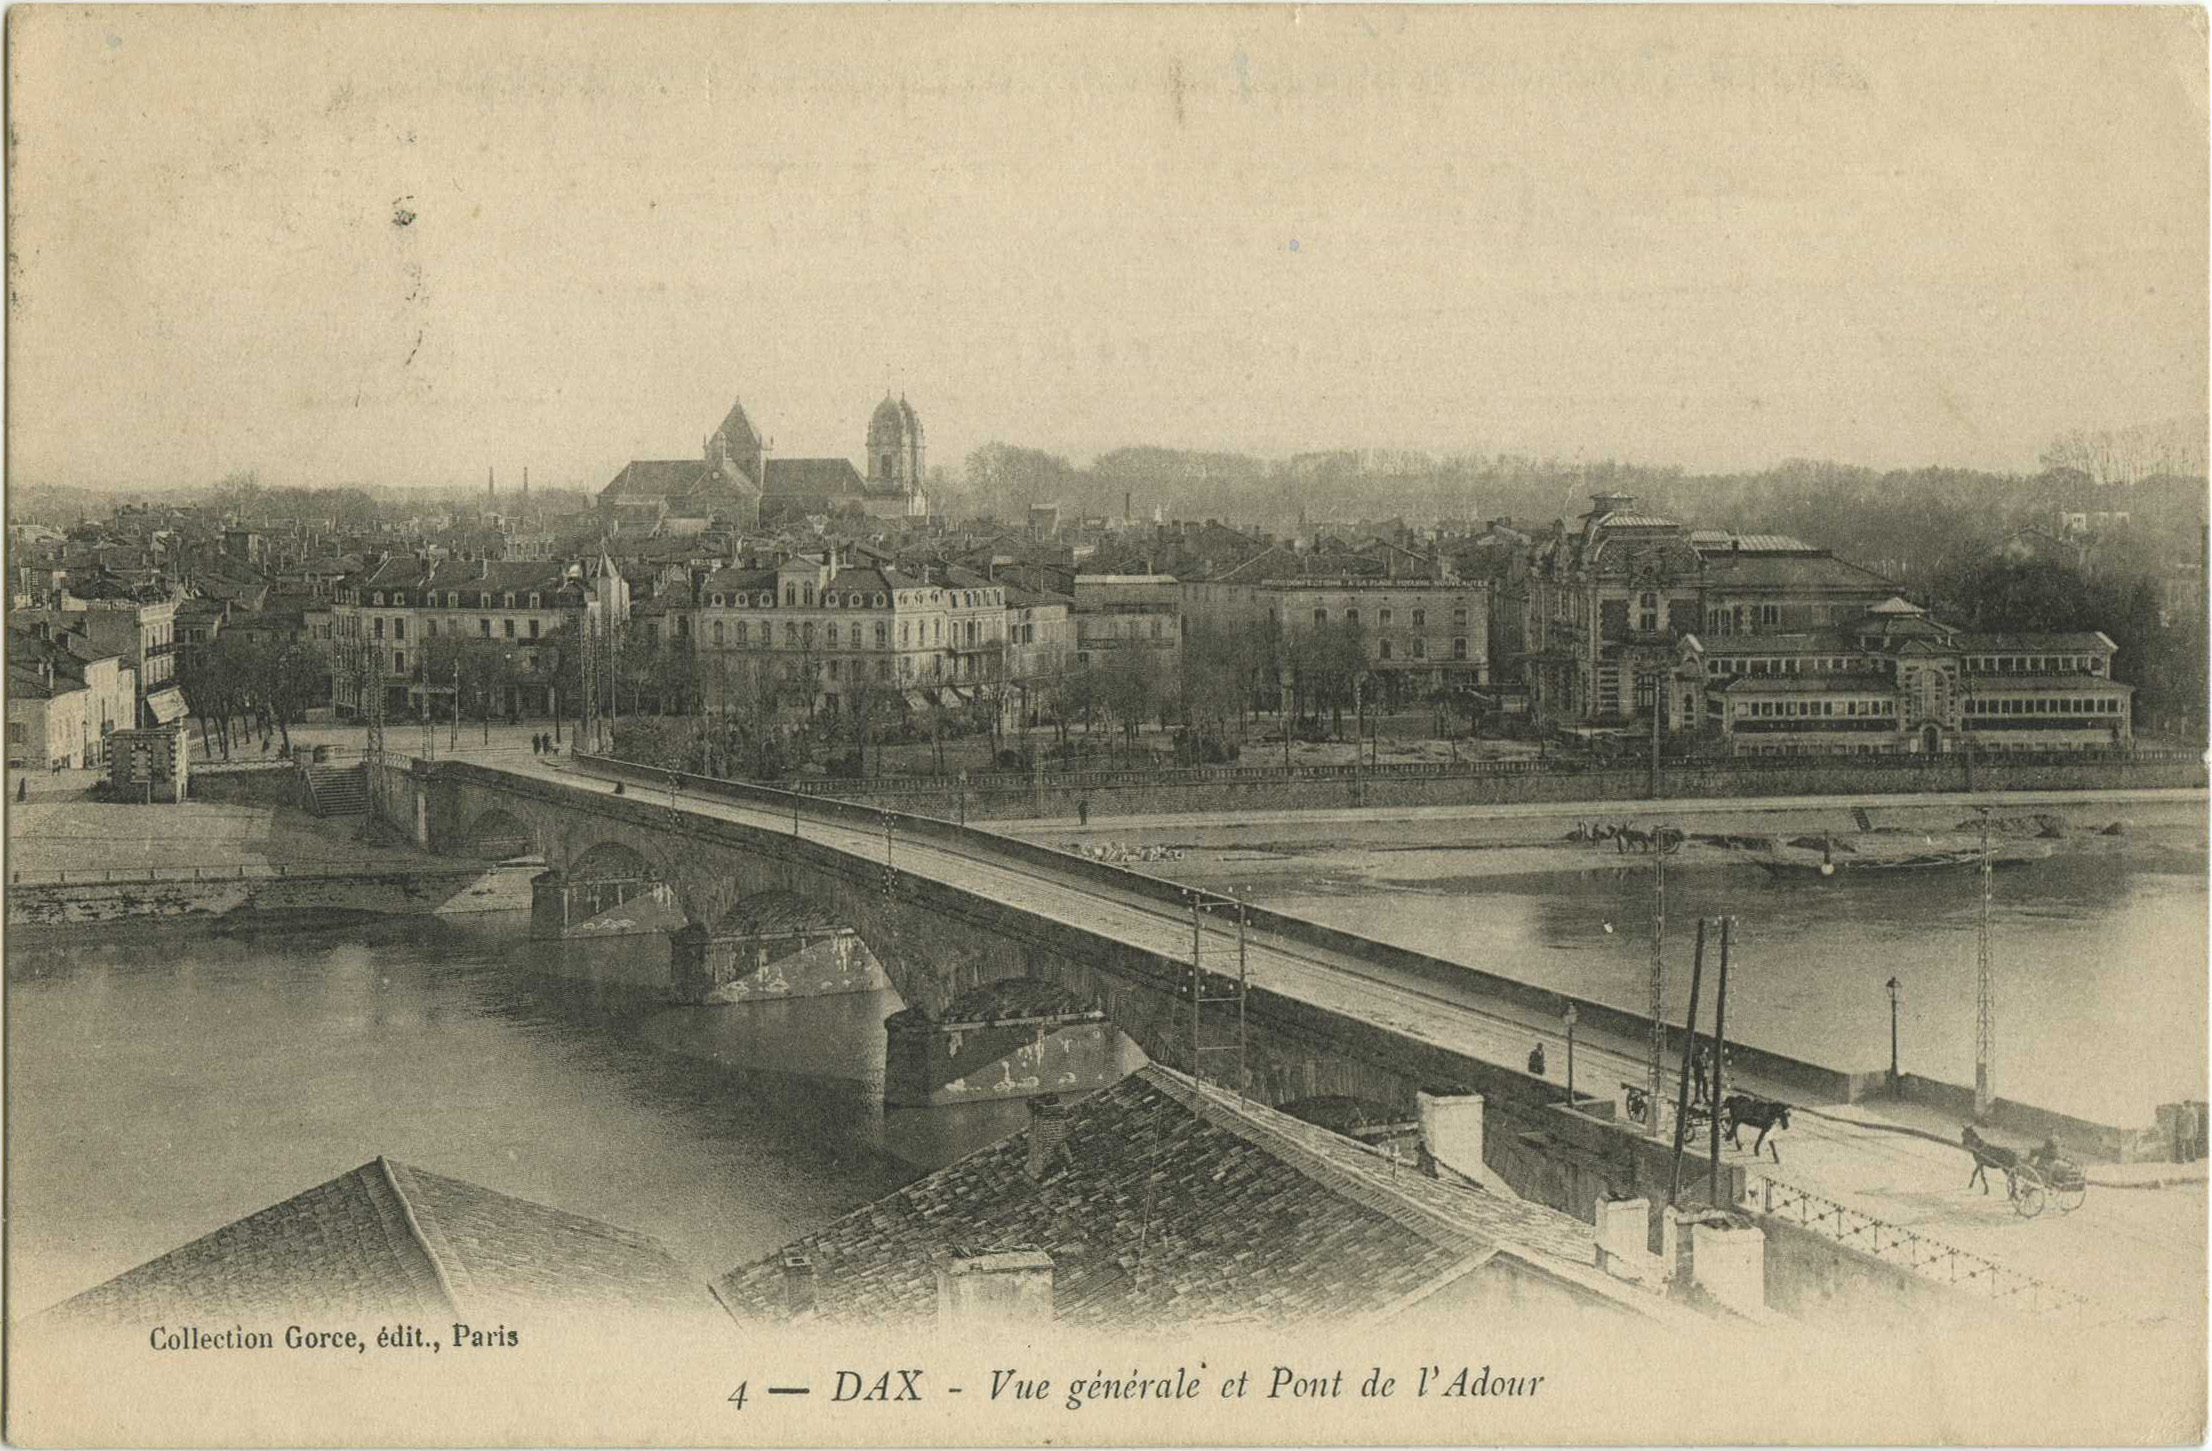 Dax - Vue générale et Pont de l'Adour